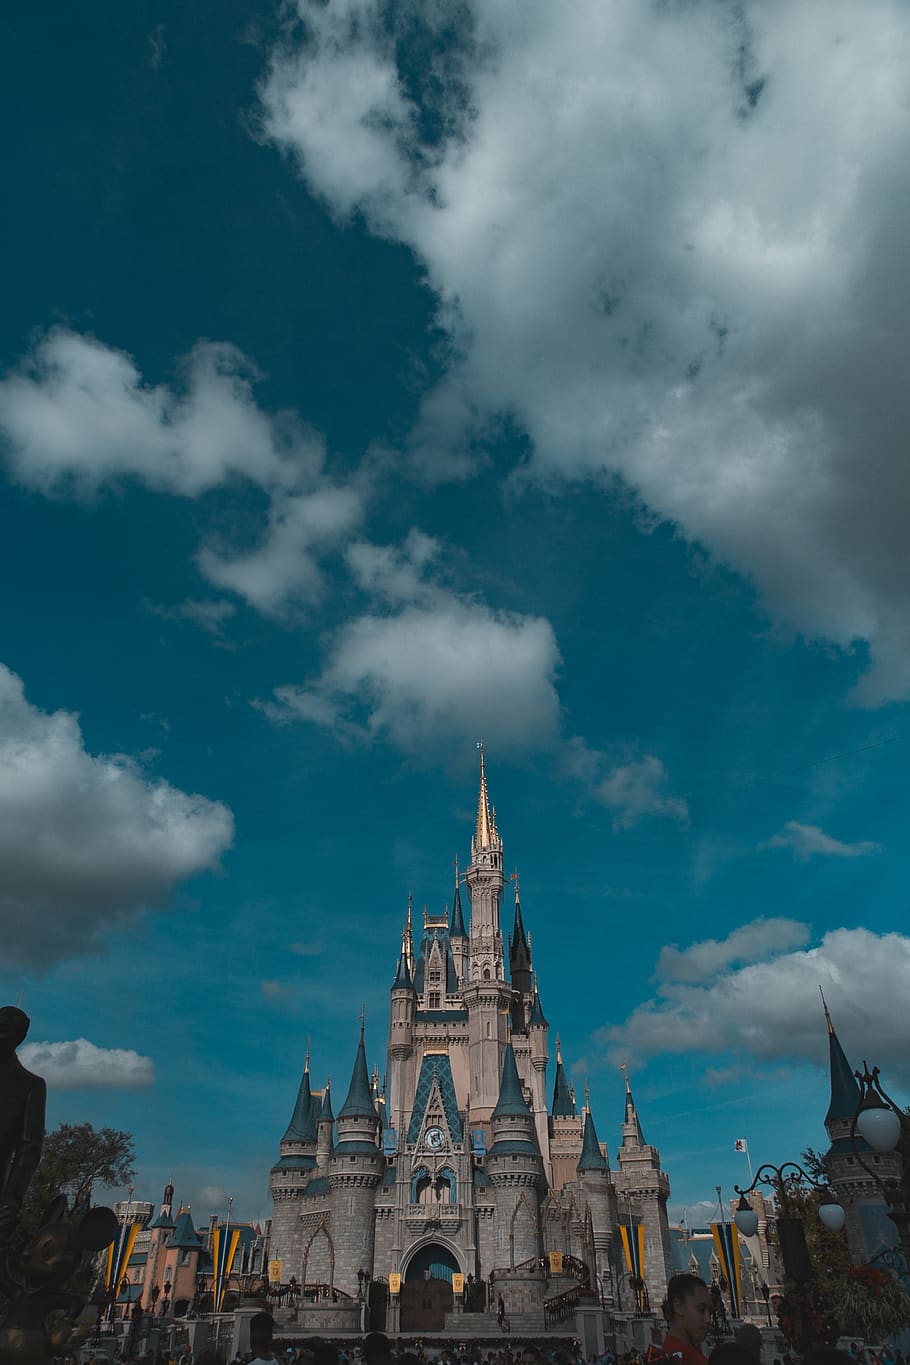 Disney Castle IPhone Wallpaper 74 images